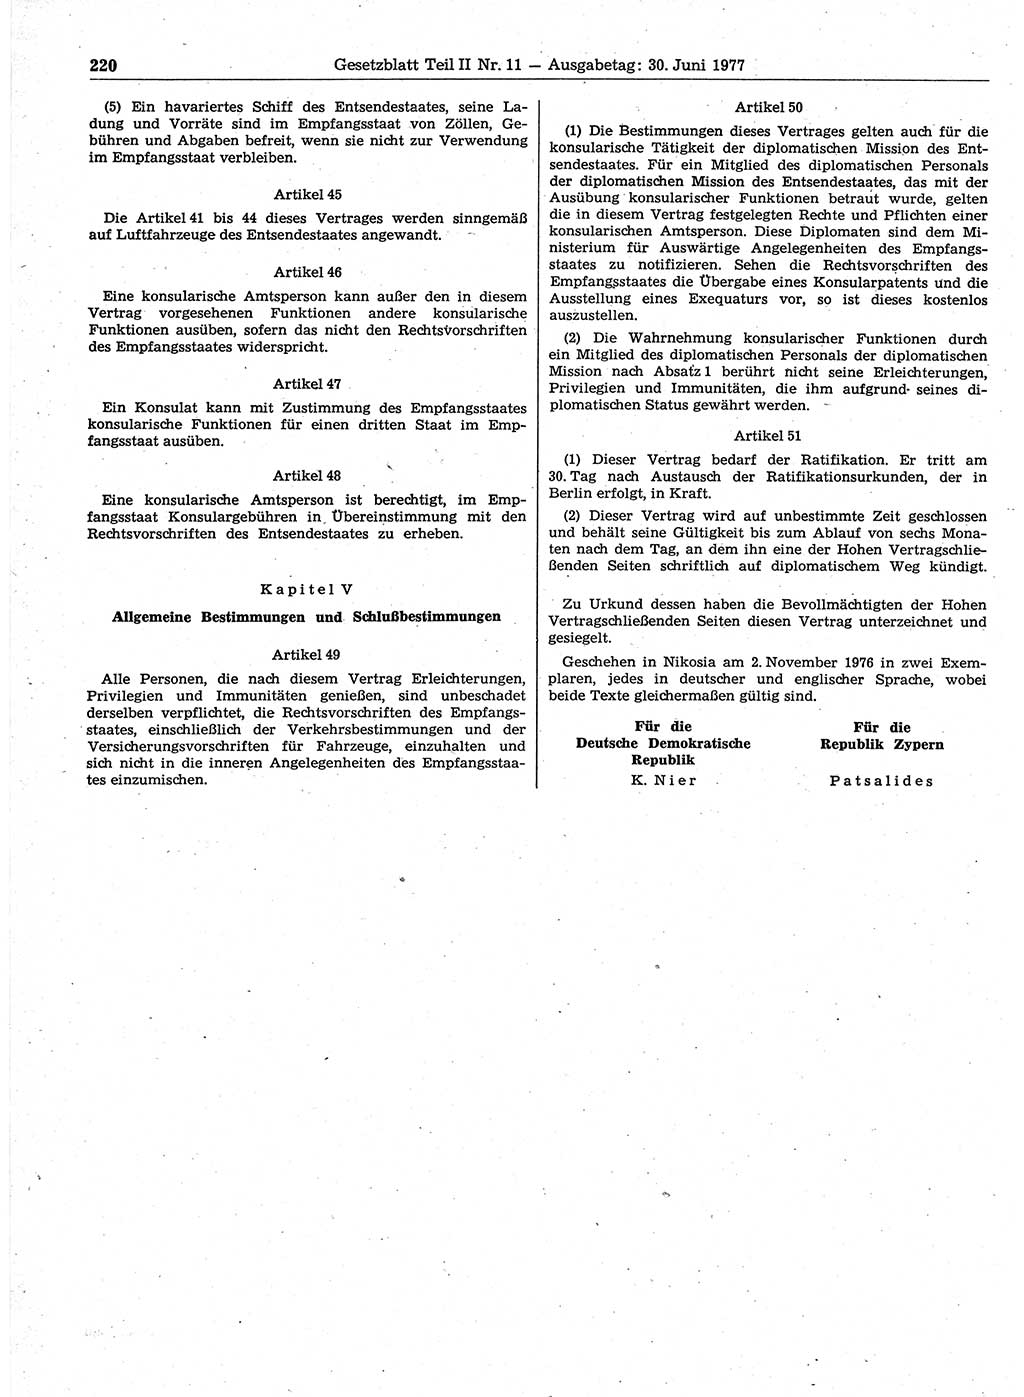 Gesetzblatt (GBl.) der Deutschen Demokratischen Republik (DDR) Teil ⅠⅠ 1977, Seite 220 (GBl. DDR ⅠⅠ 1977, S. 220)